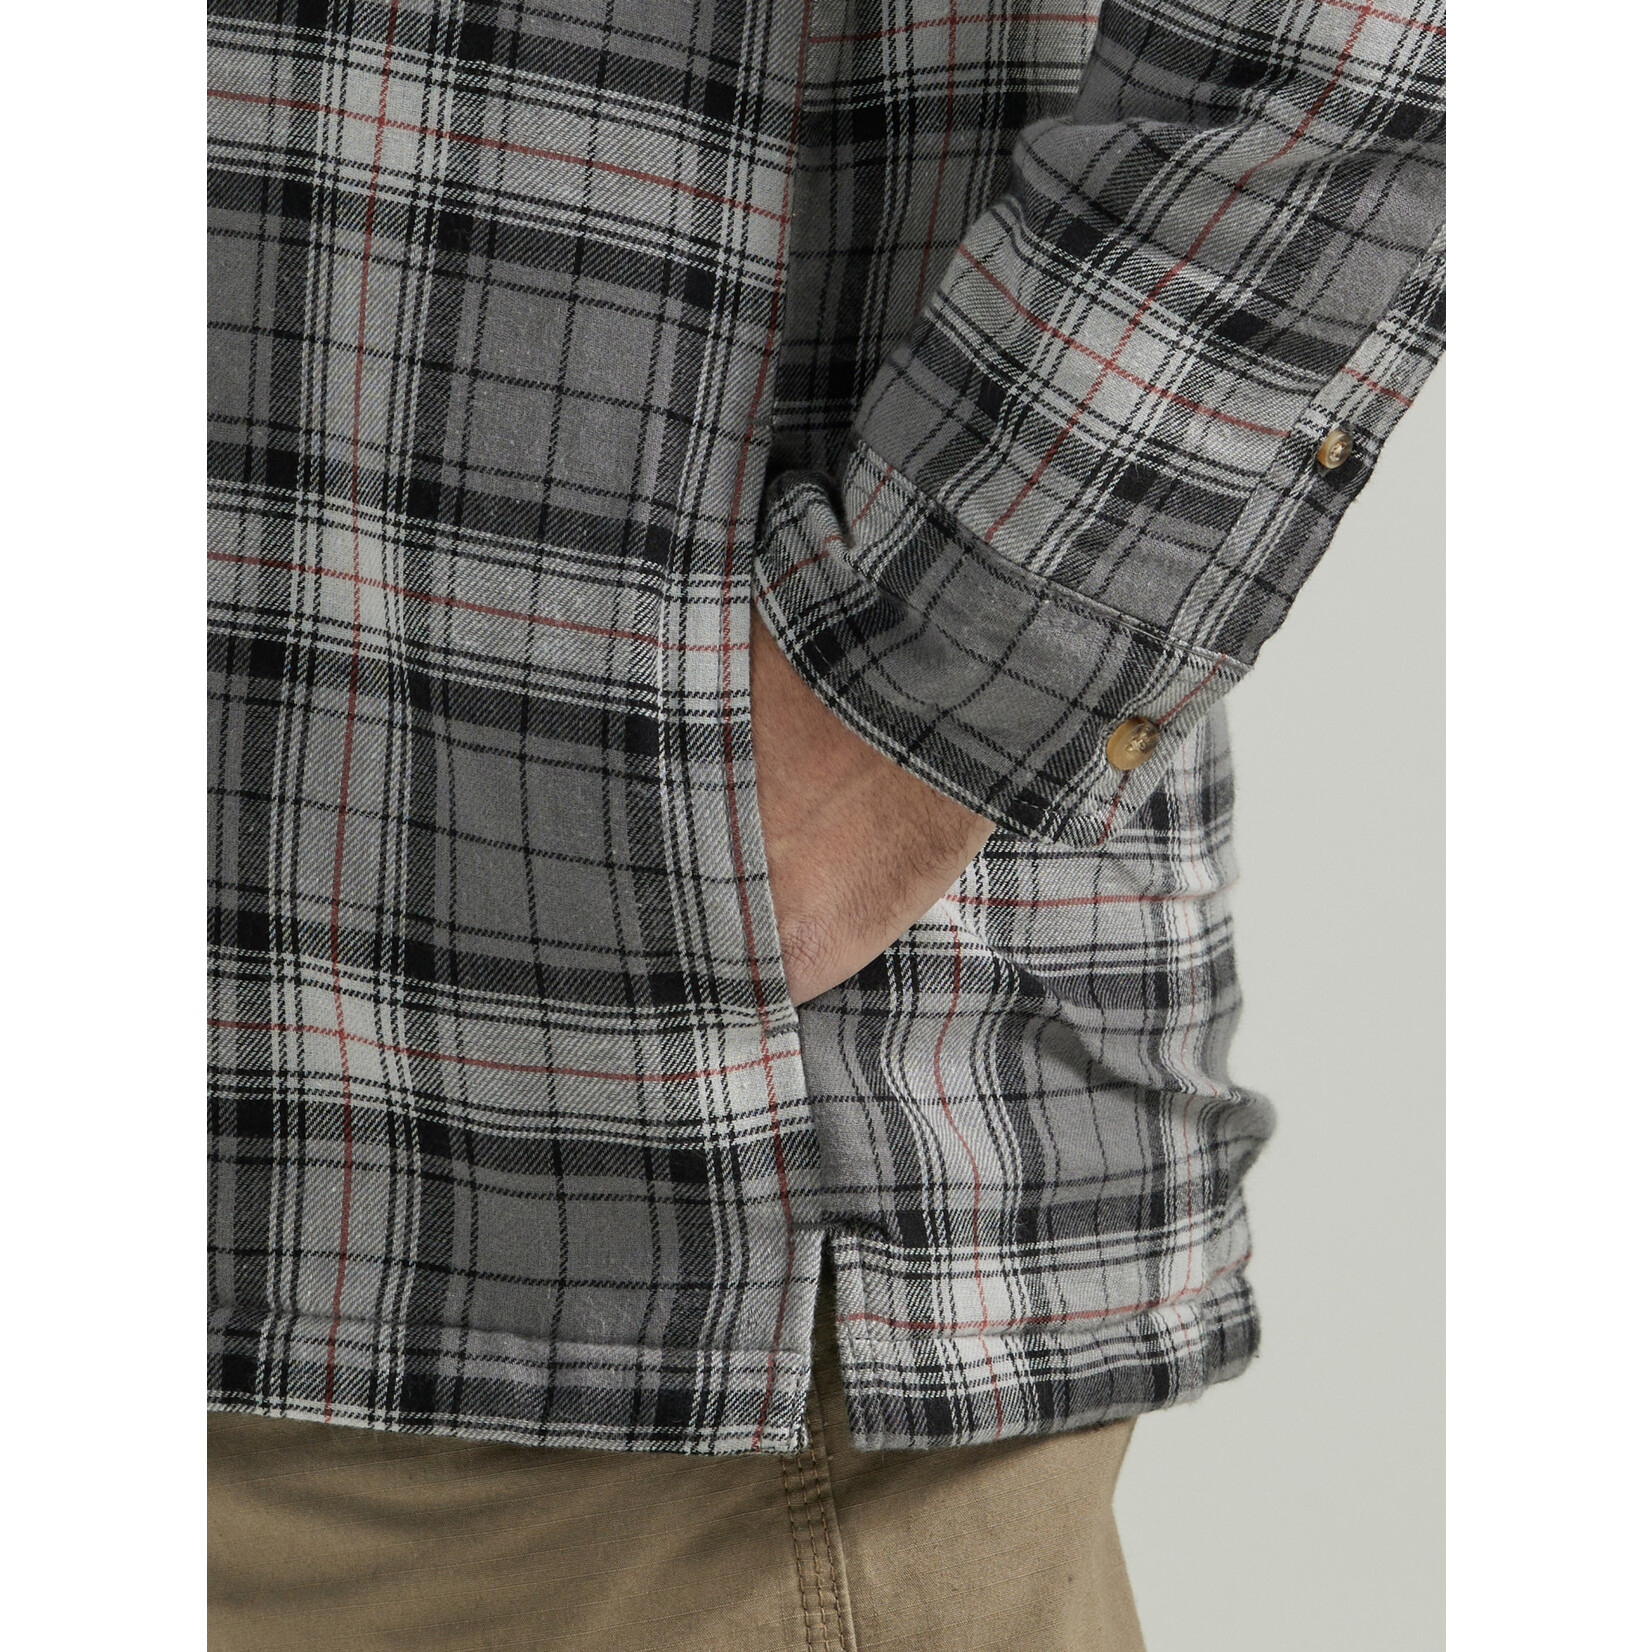 Wrangler Wrangler Men's Riggs Workwear Hooded Flannel - 112330053